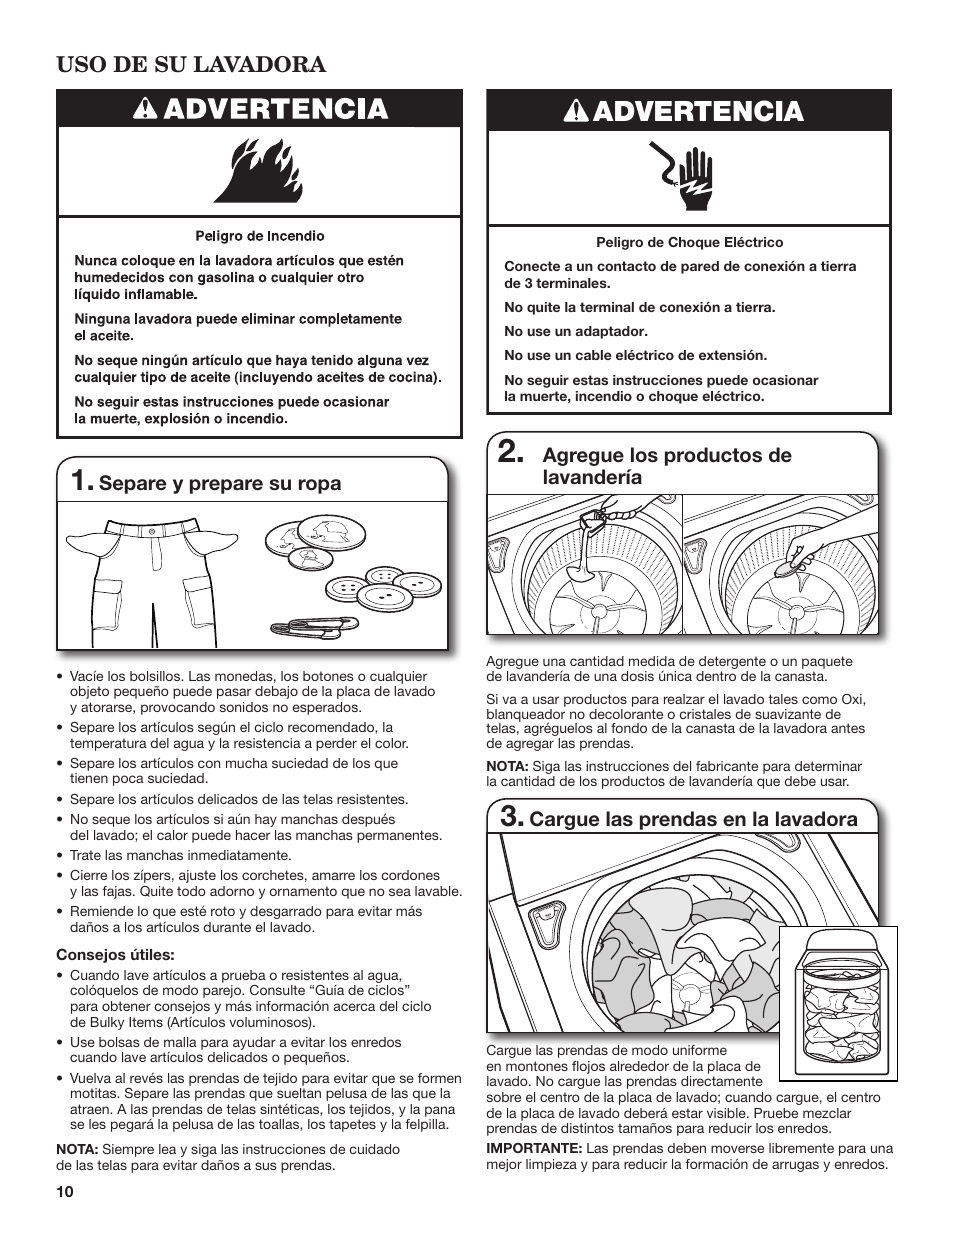 Advertencia, Uso de su lavadora, Separe y prepare su ropa, Whirlpool  WTW8900BC Manual del usuario, Página 10 / 24